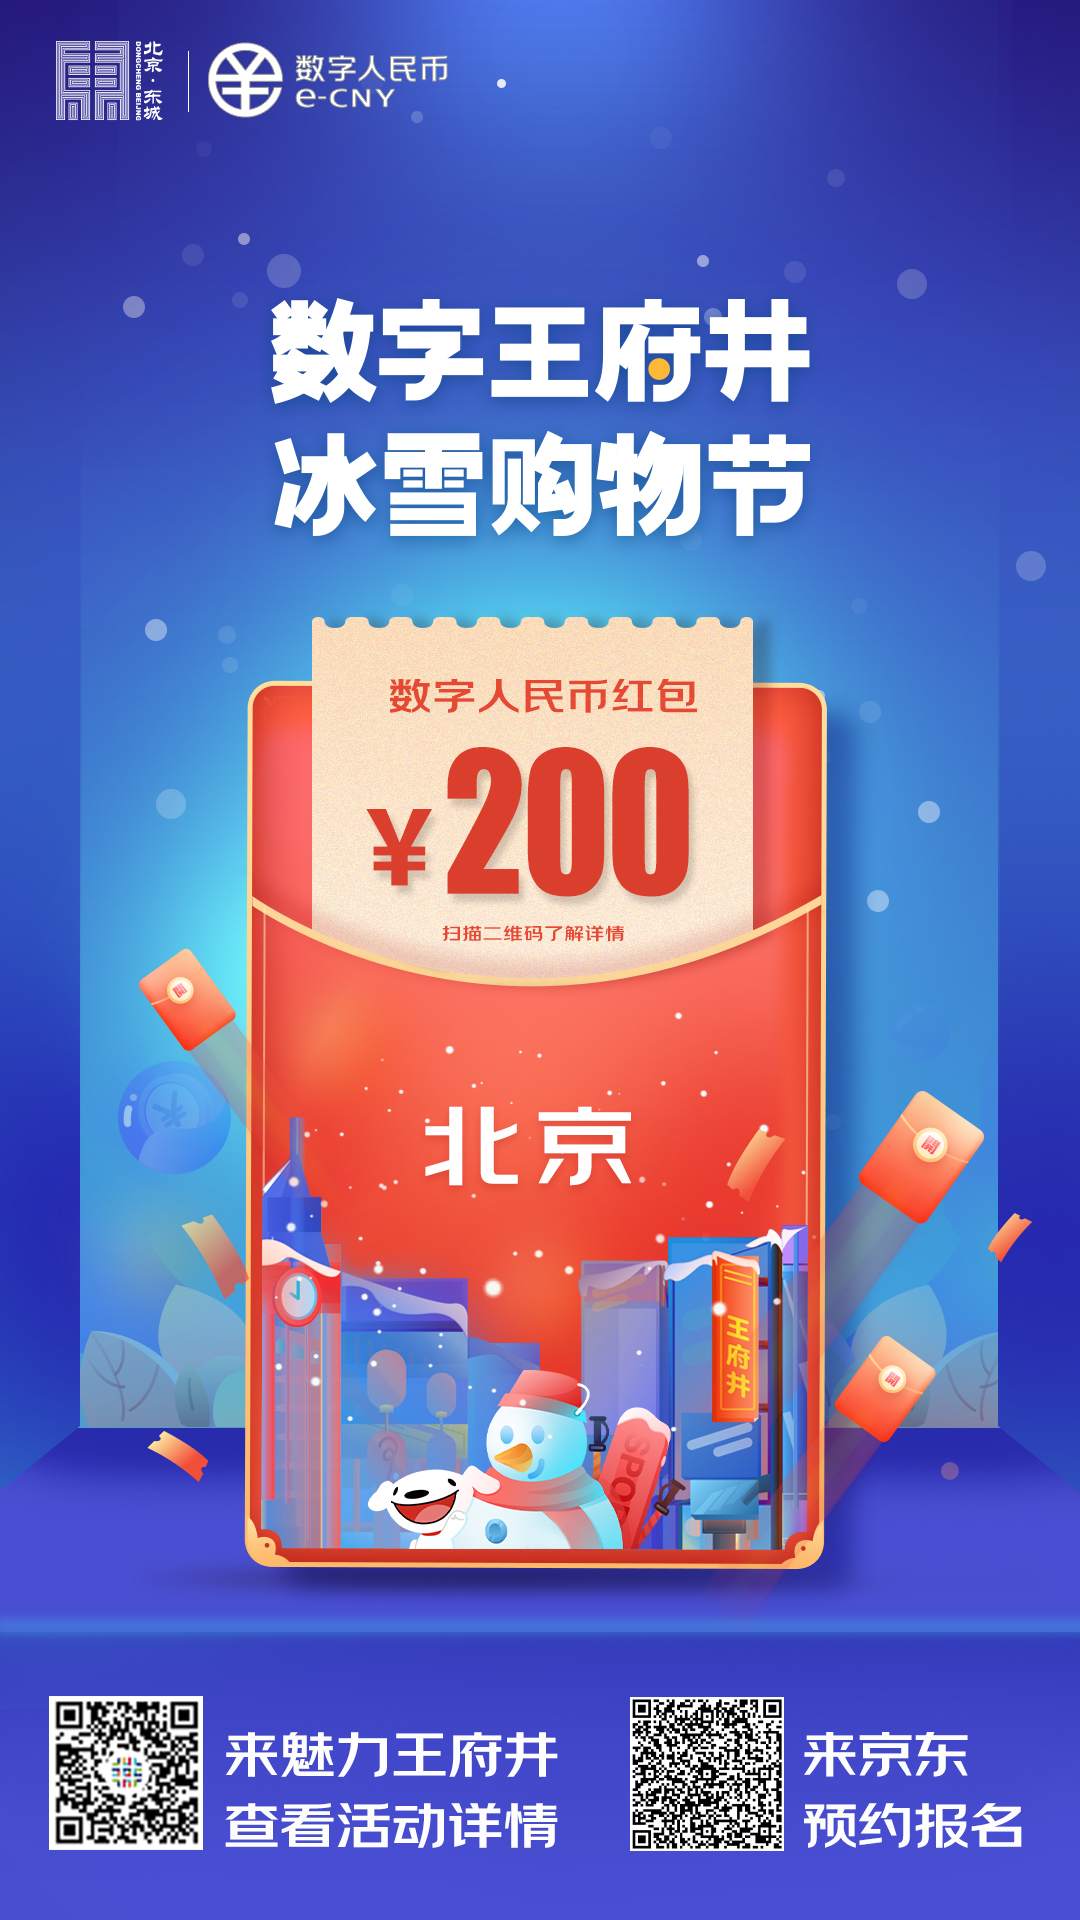 2月7日0时起，北京发放5万份金额200元数字人民币红包